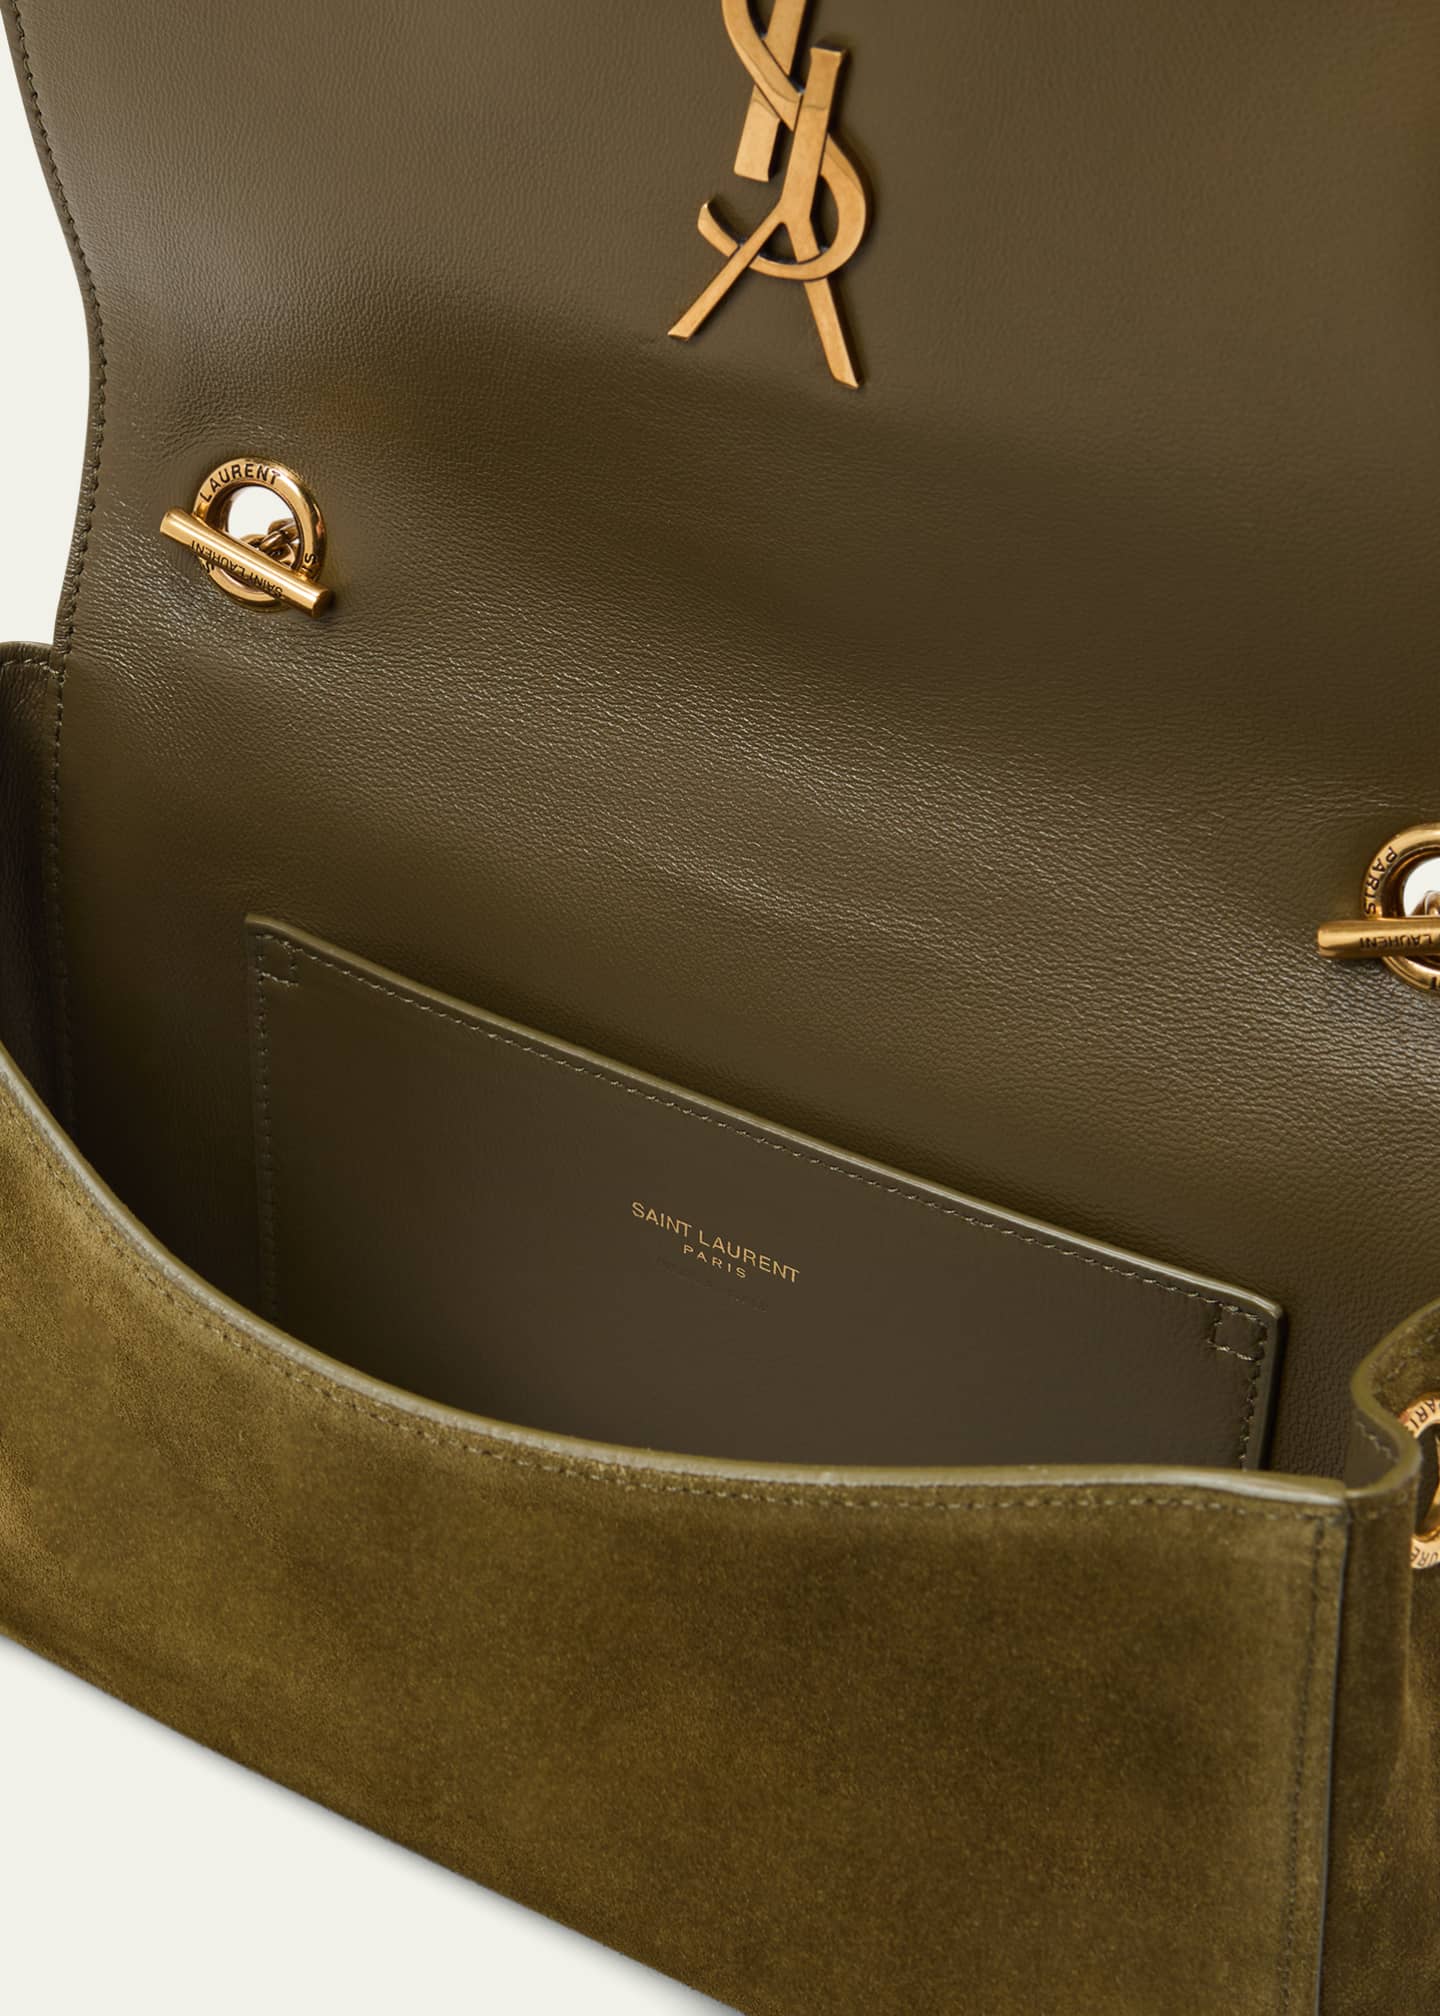 Shop authentic Saint Laurent Kate Small Shoulder Bag at revogue